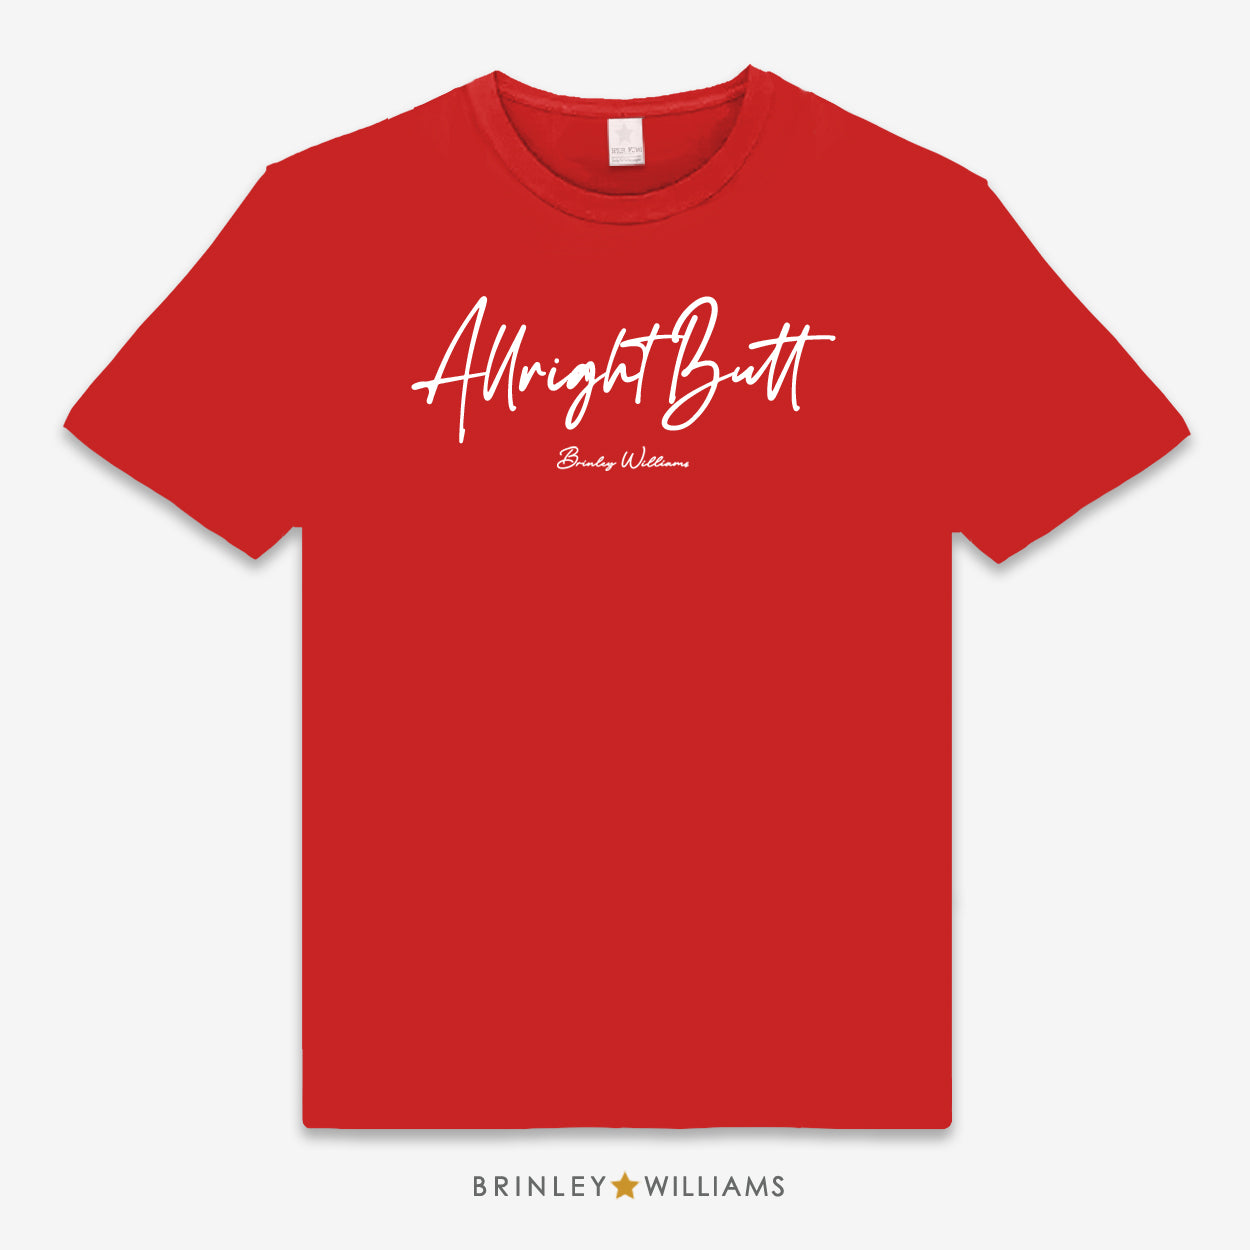 Allright Butt Unisex Classic T-shirt - Red